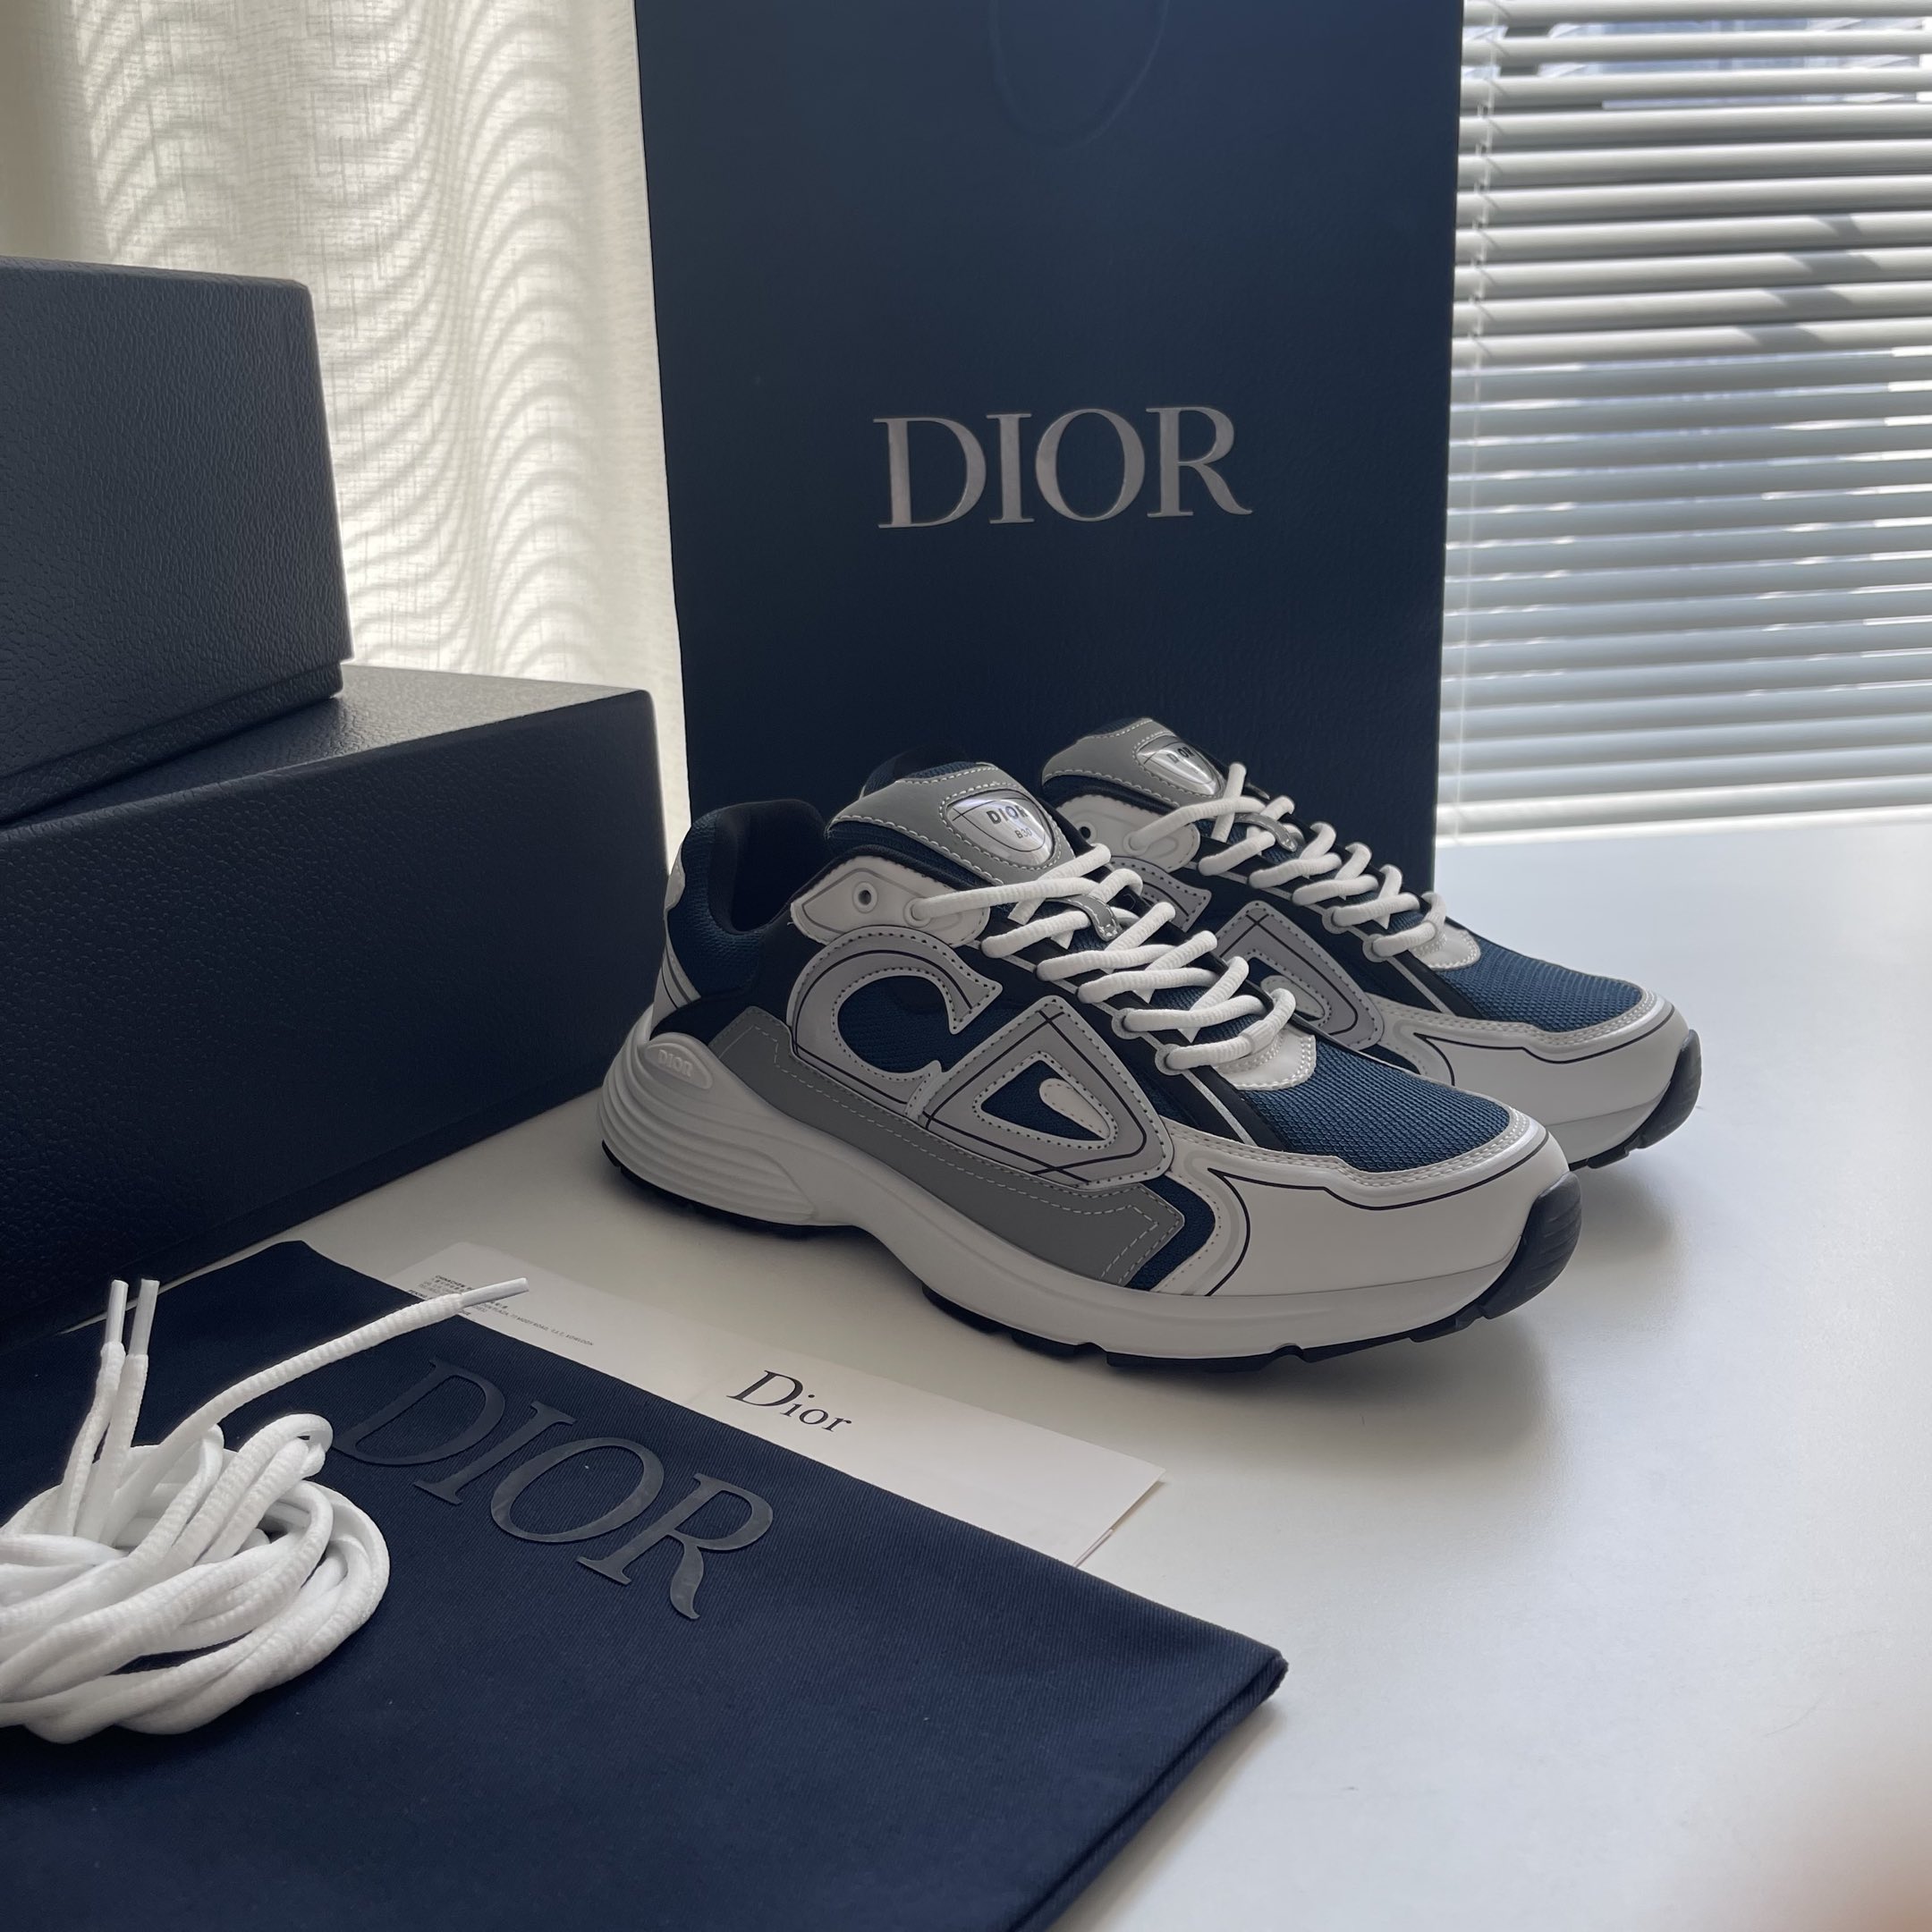 Dior Schuhe Turnschuhe Blau Dunkelblau Grau Silber Weiß Rindsleder Gewebe Kautschuk Fashion Lässig